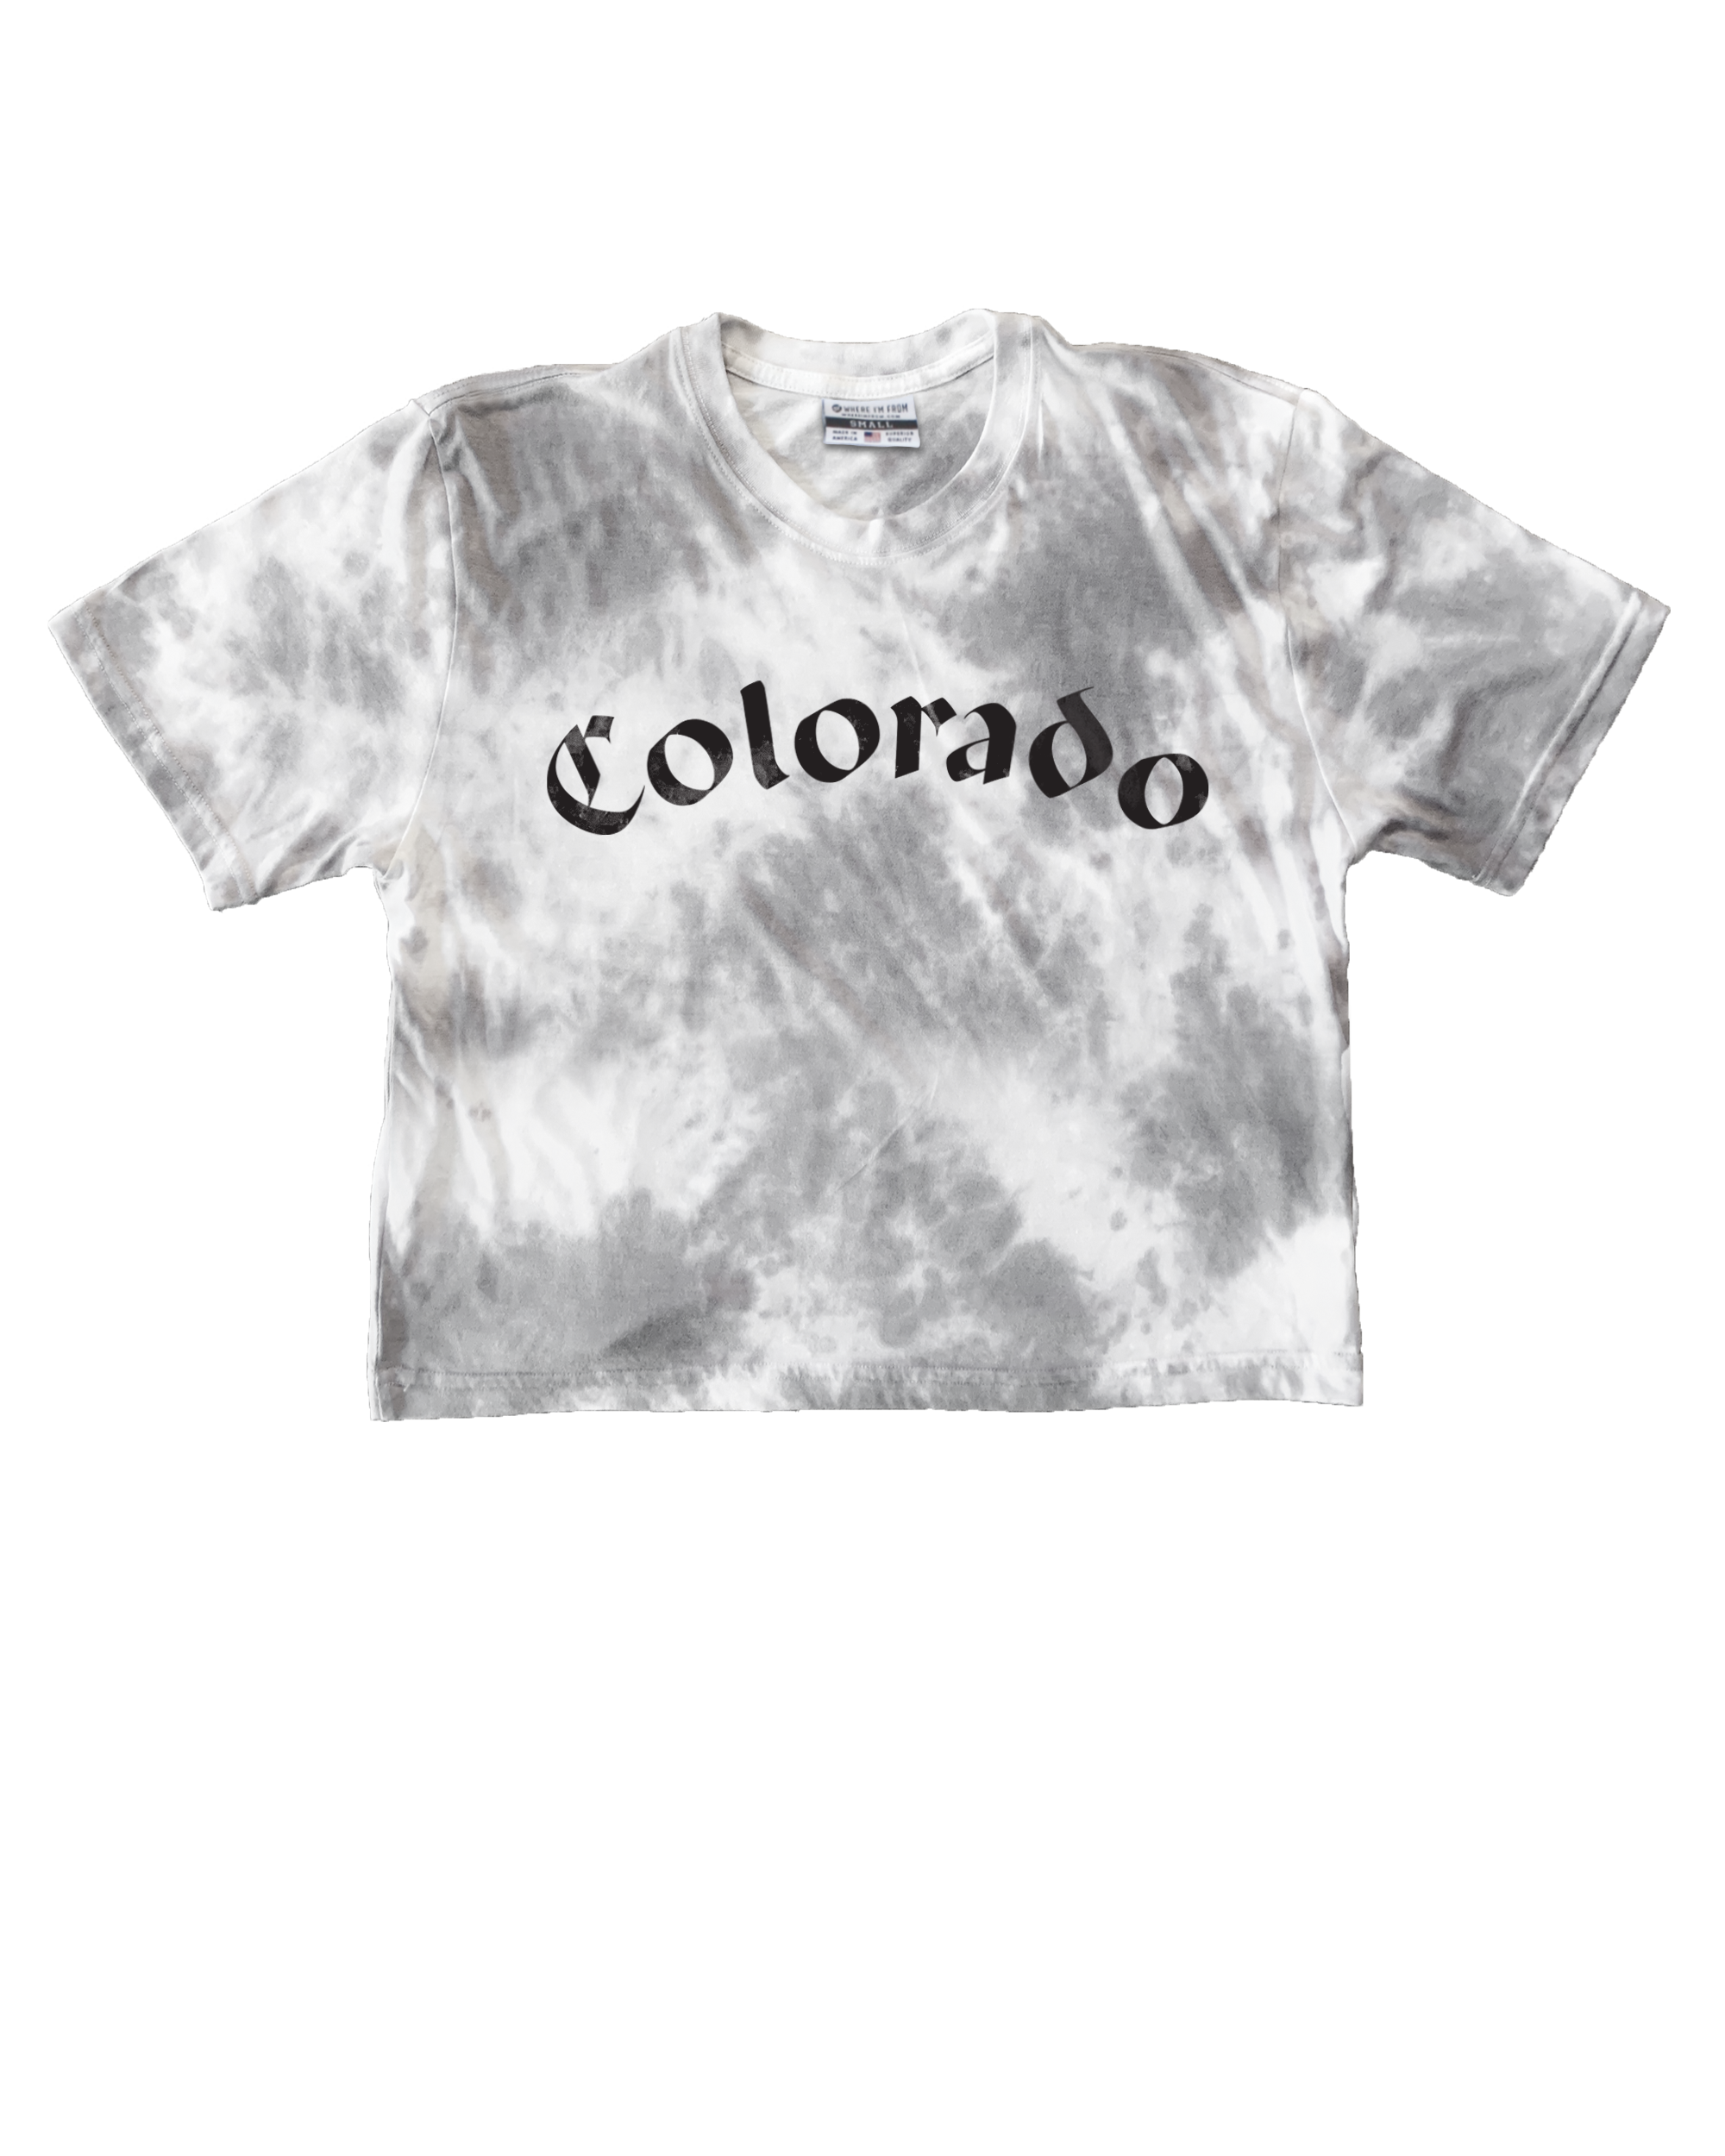 Olde Colorado Script Tie Dye Crop Top